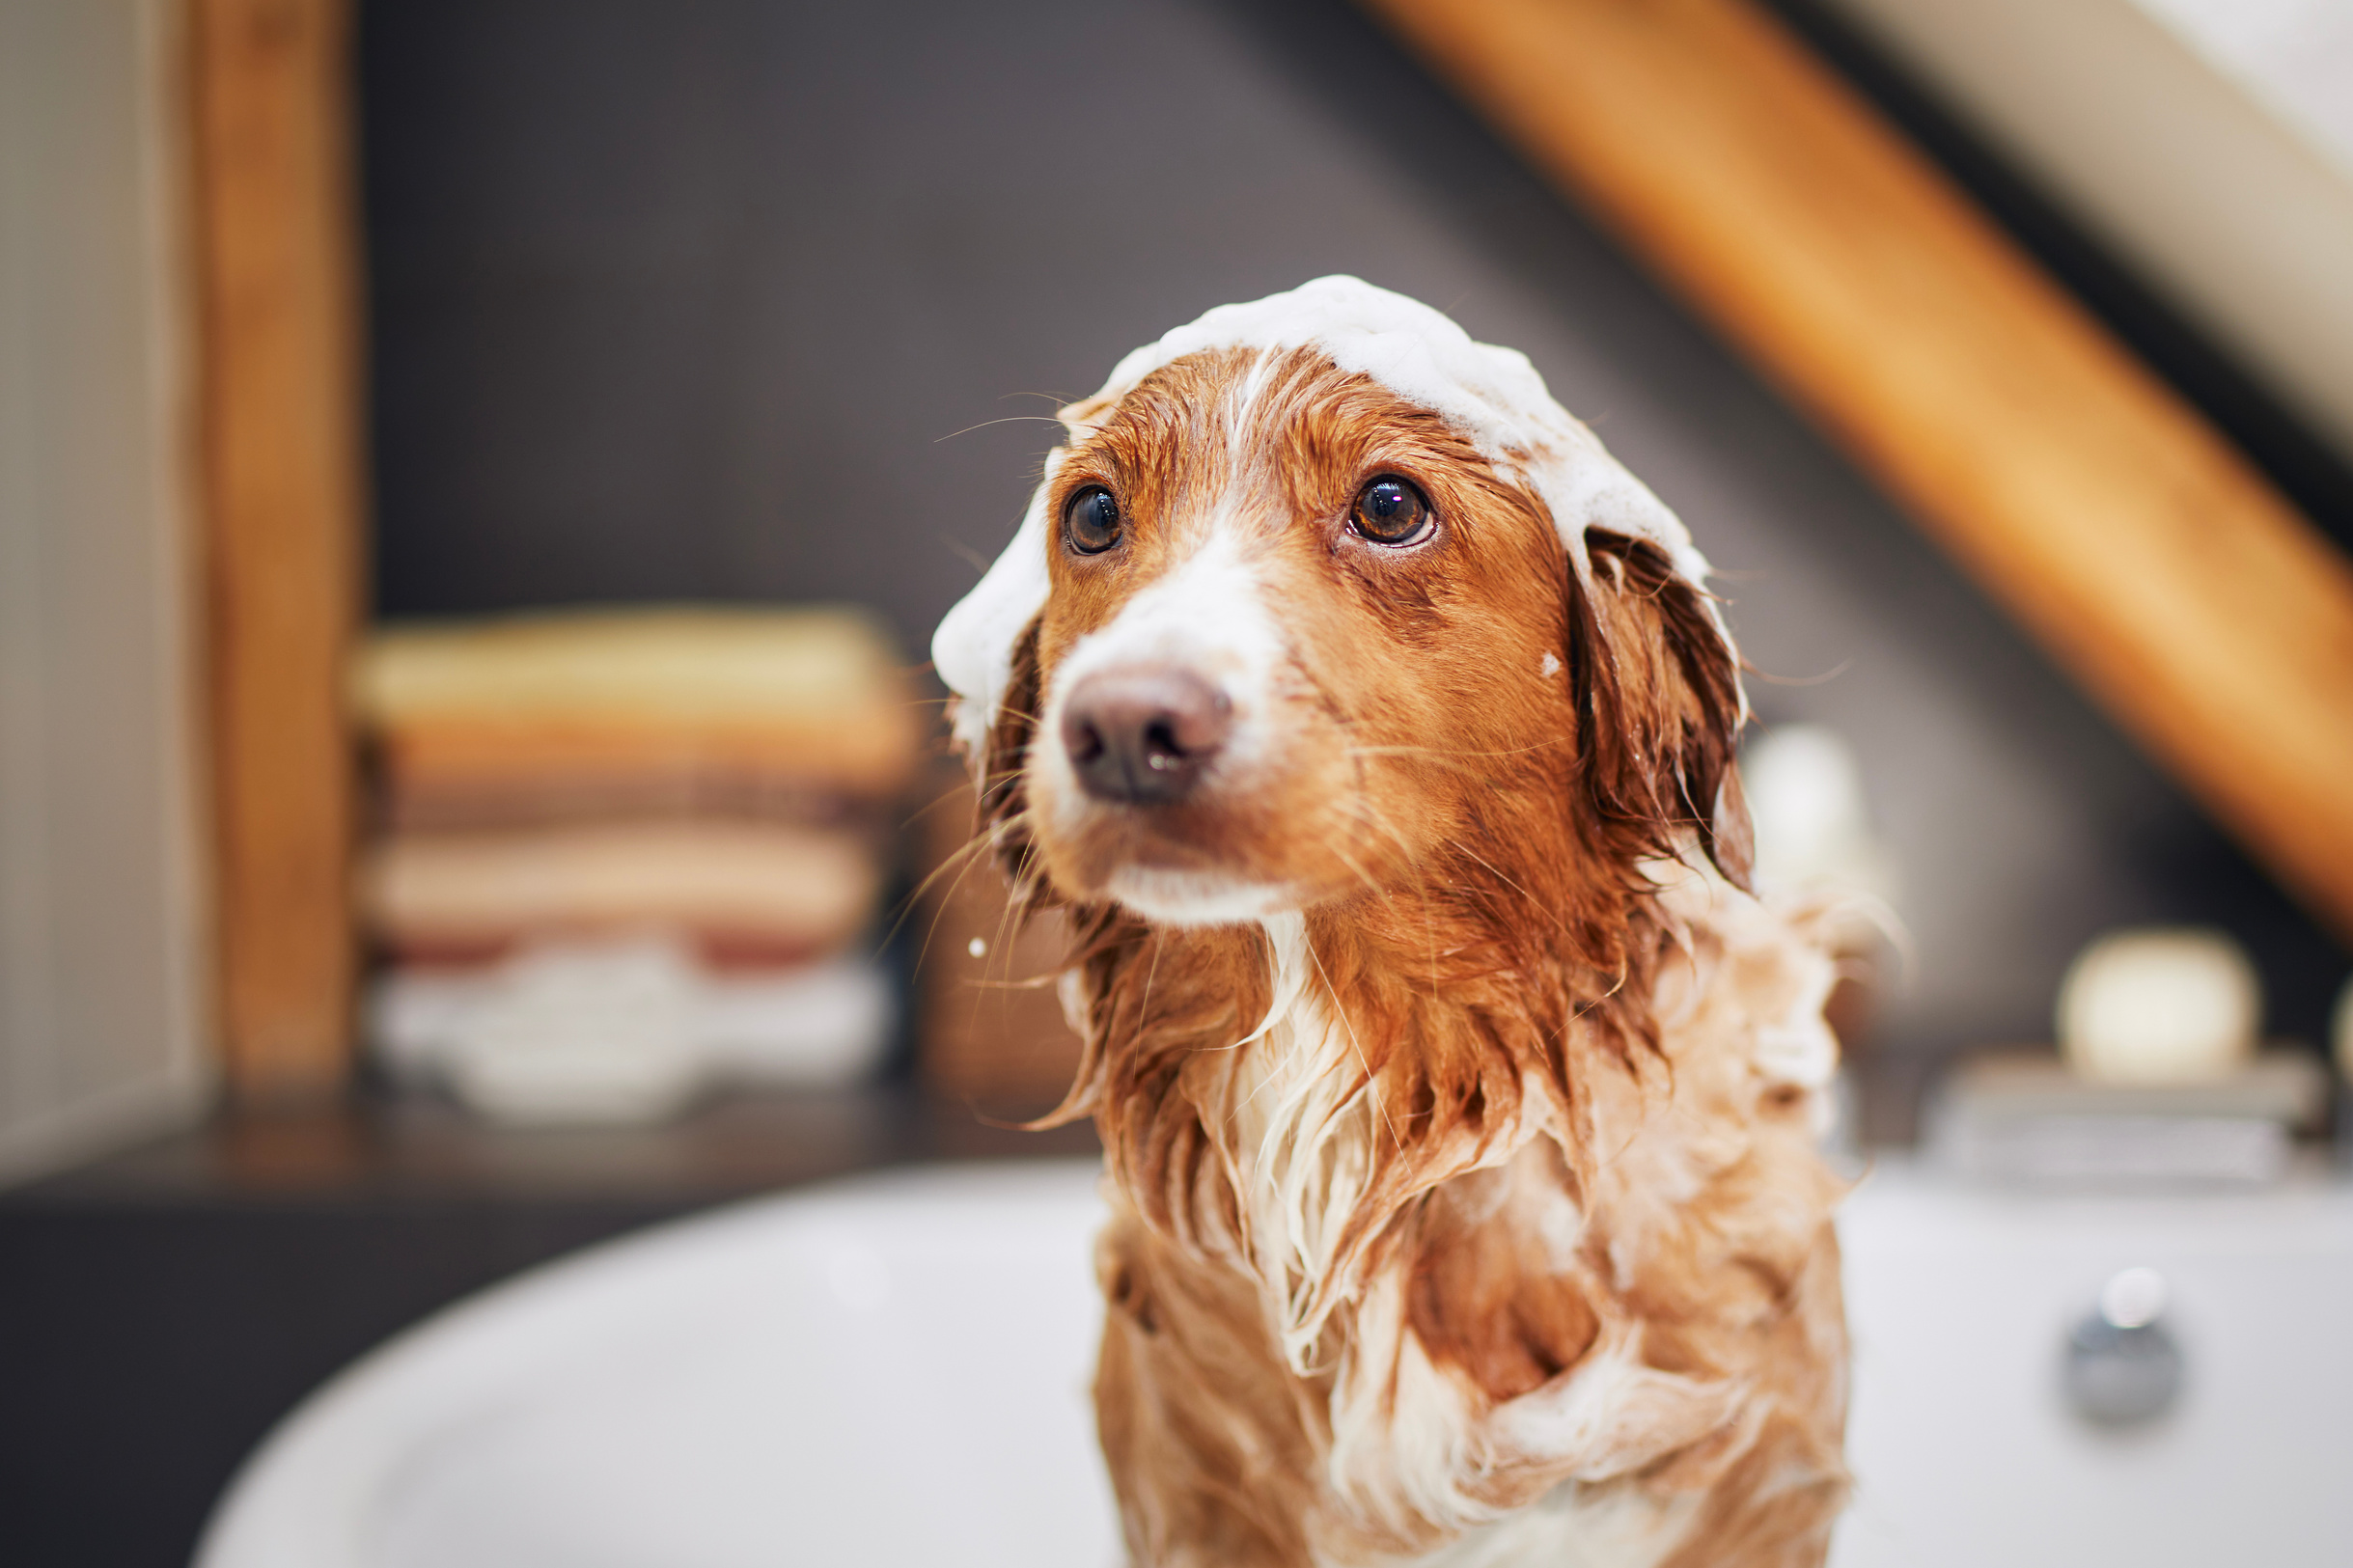 Dog taking bath at home